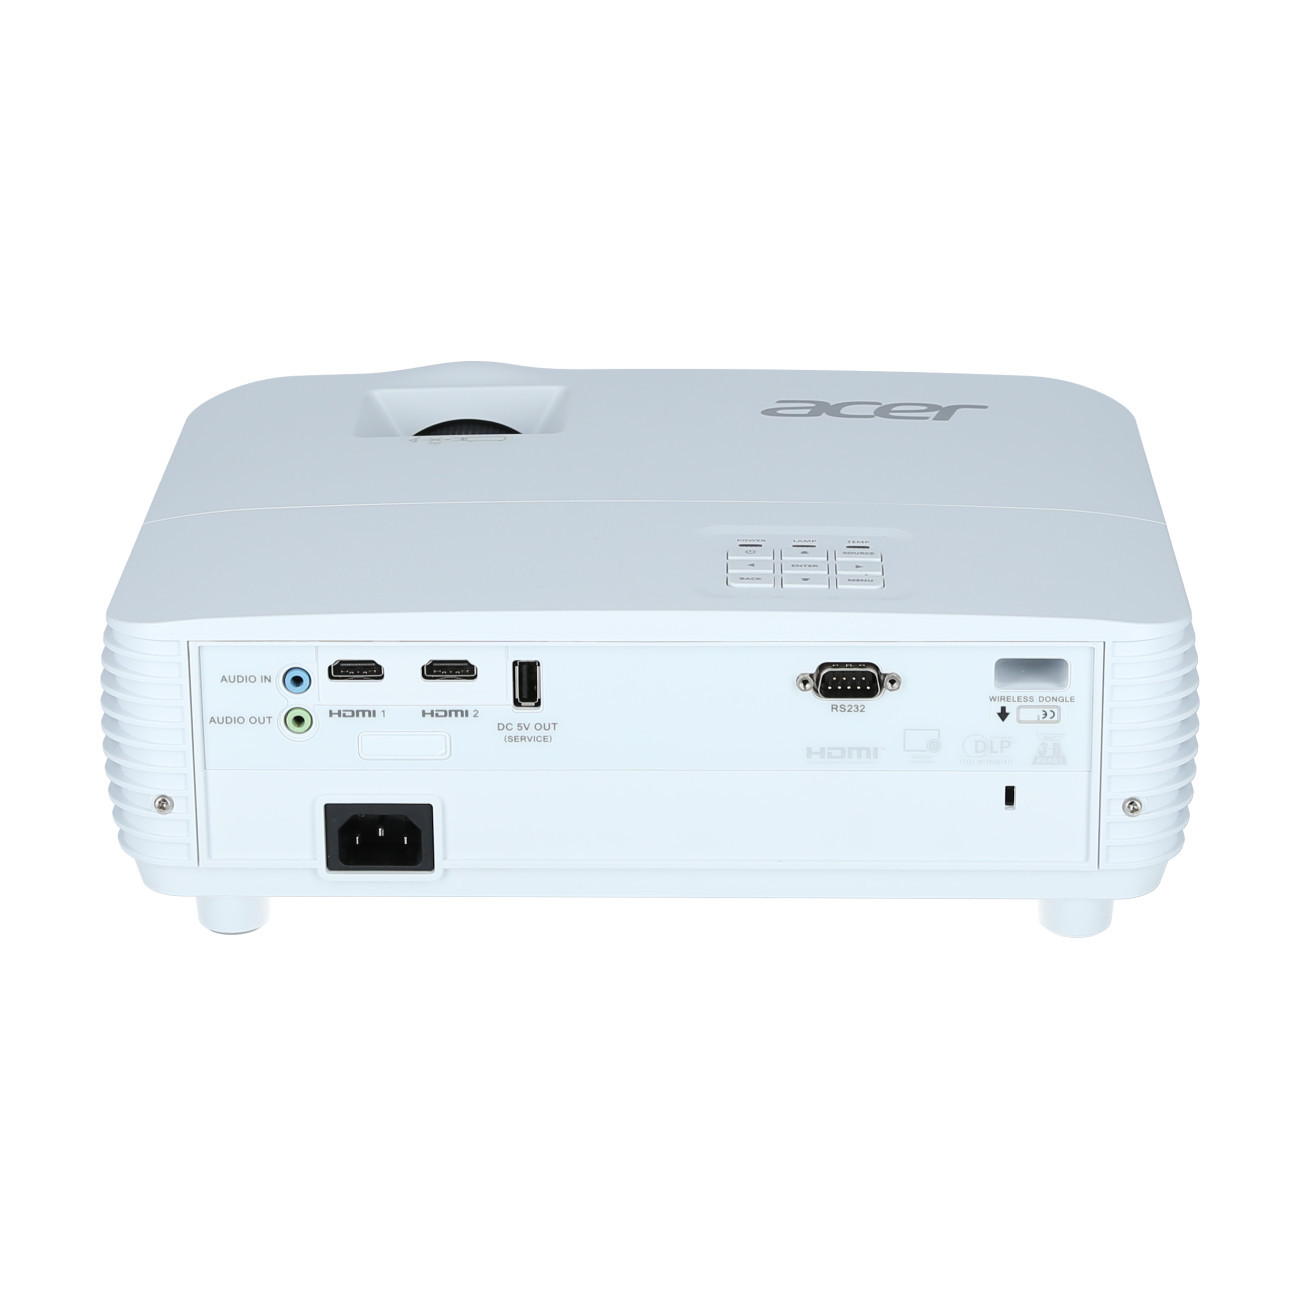 Vorschau: Acer H6543Ki Heimkino Beamer mit 4500 ANSI-Lumen und Full-HD Auflösung - Demo